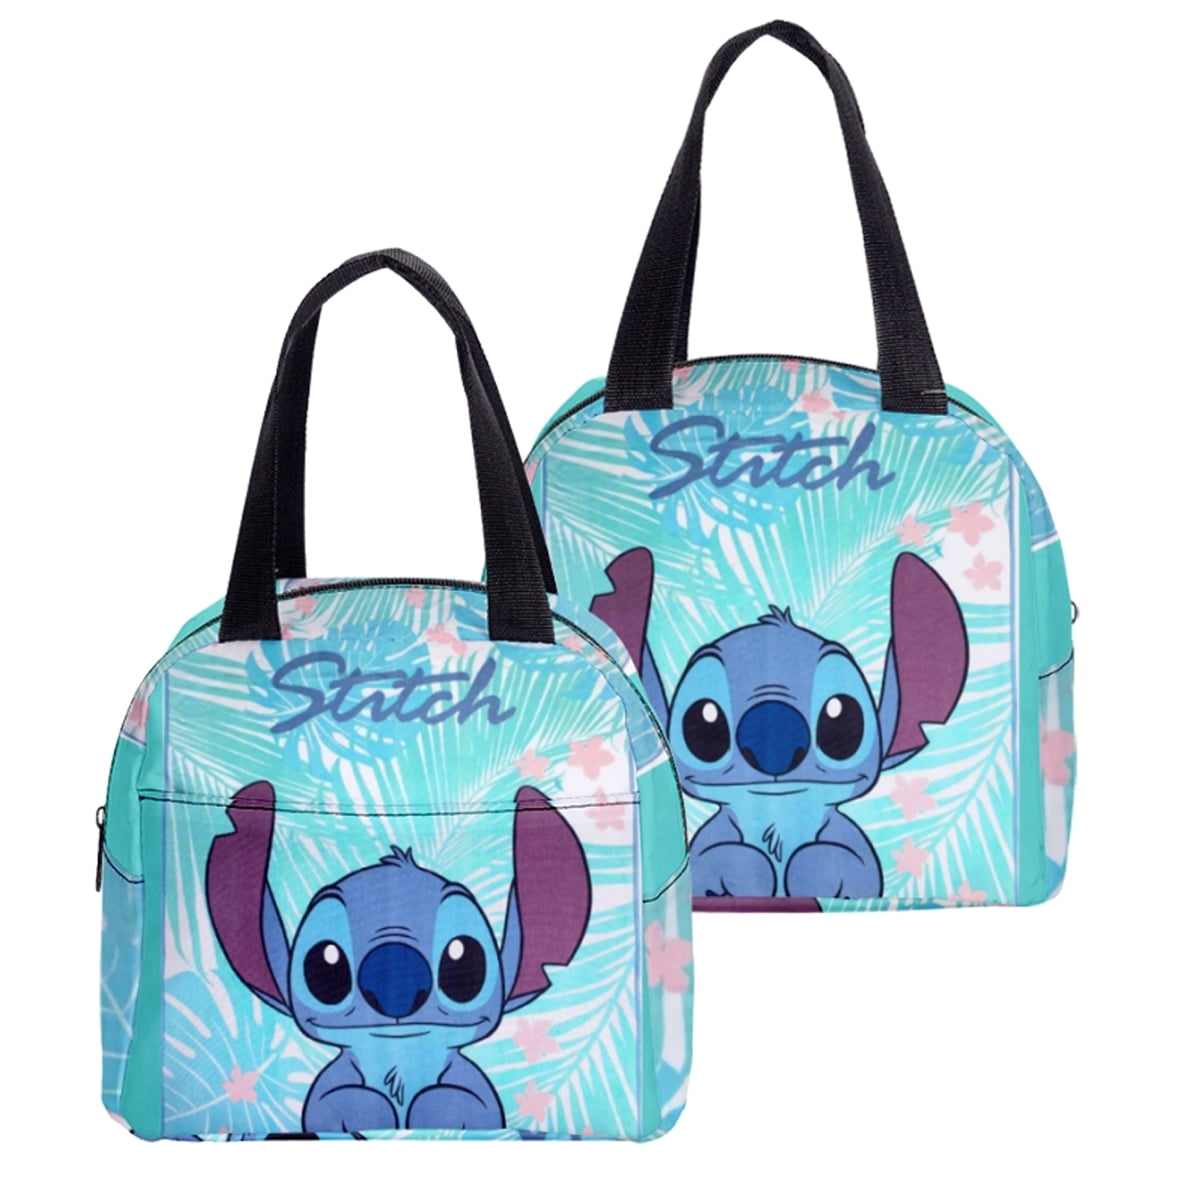 Lilo & Stitch Lunch Bag, Five Below